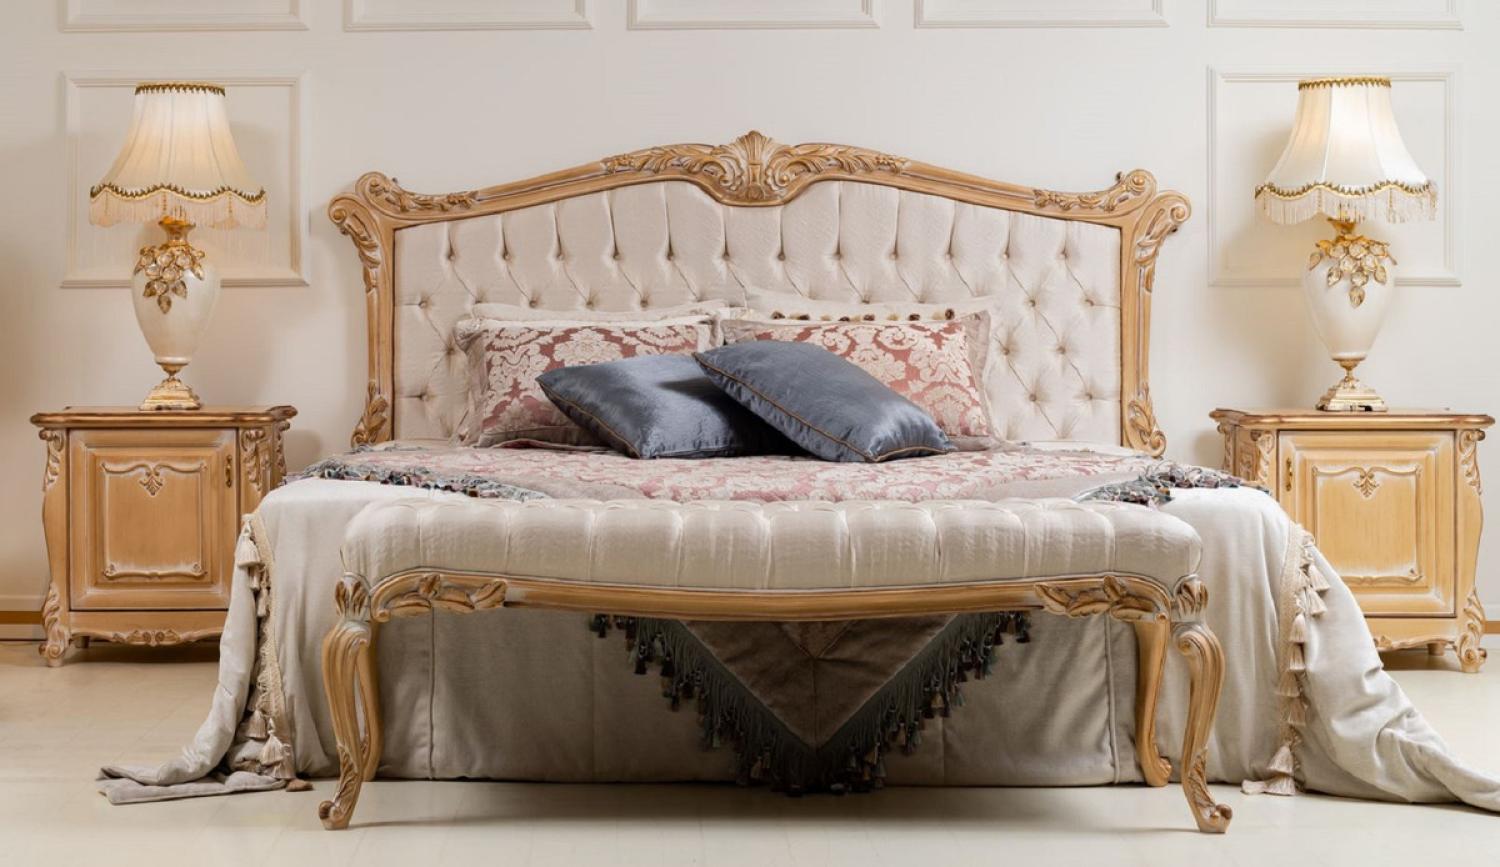 Casa Padrino Luxus Barock Schlafzimmer Set Cremefarben / Gold - 1 Doppelbett mit Kopfteil & 2 Nachtkommoden - Schlafzimmer Möbel im Barockstil - Edel & Prunkvoll Bild 1